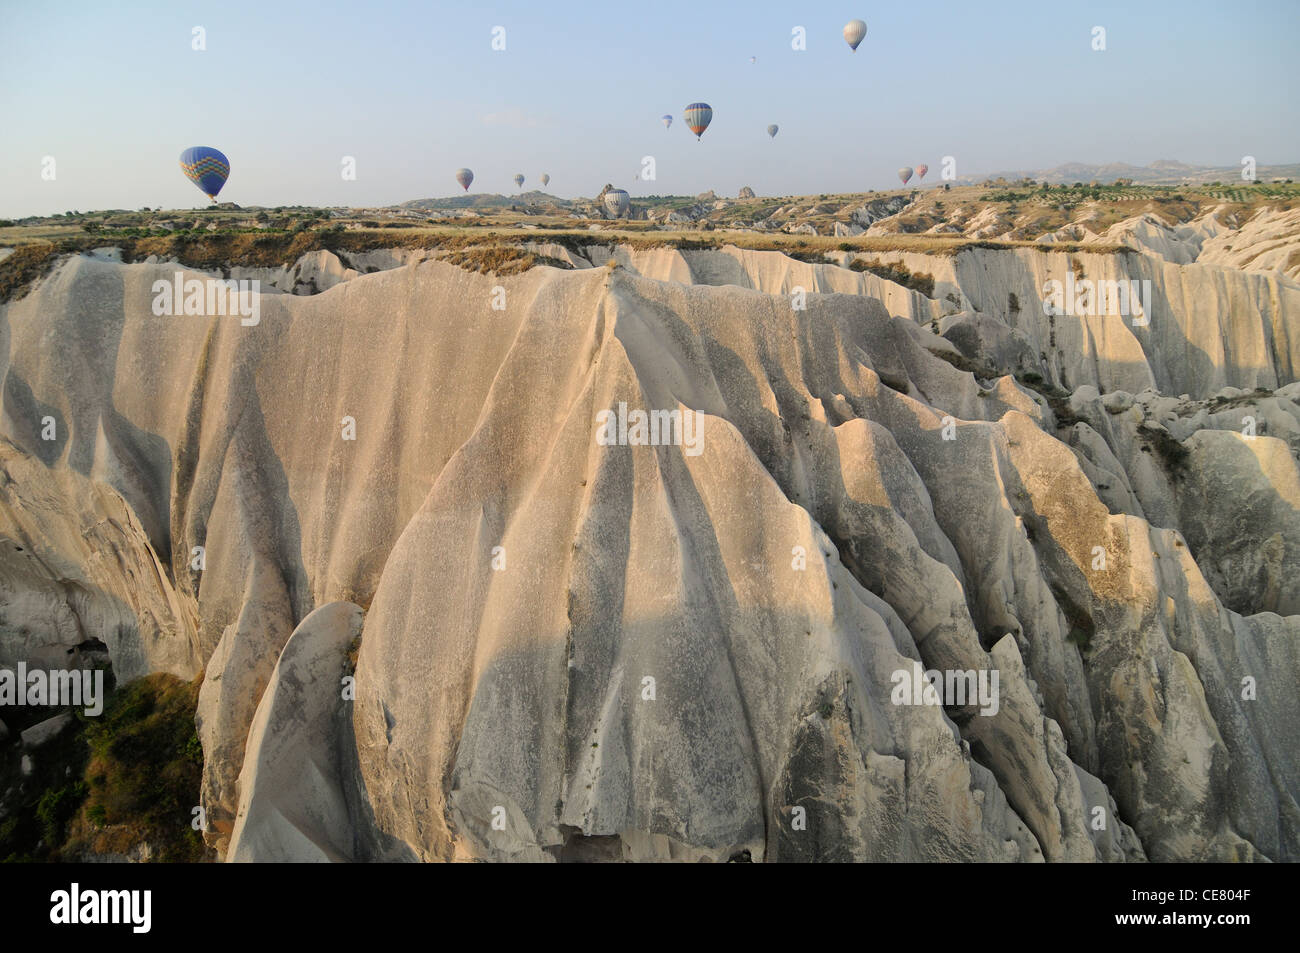 Balloon flight. Cappadocia, Turkey Stock Photo